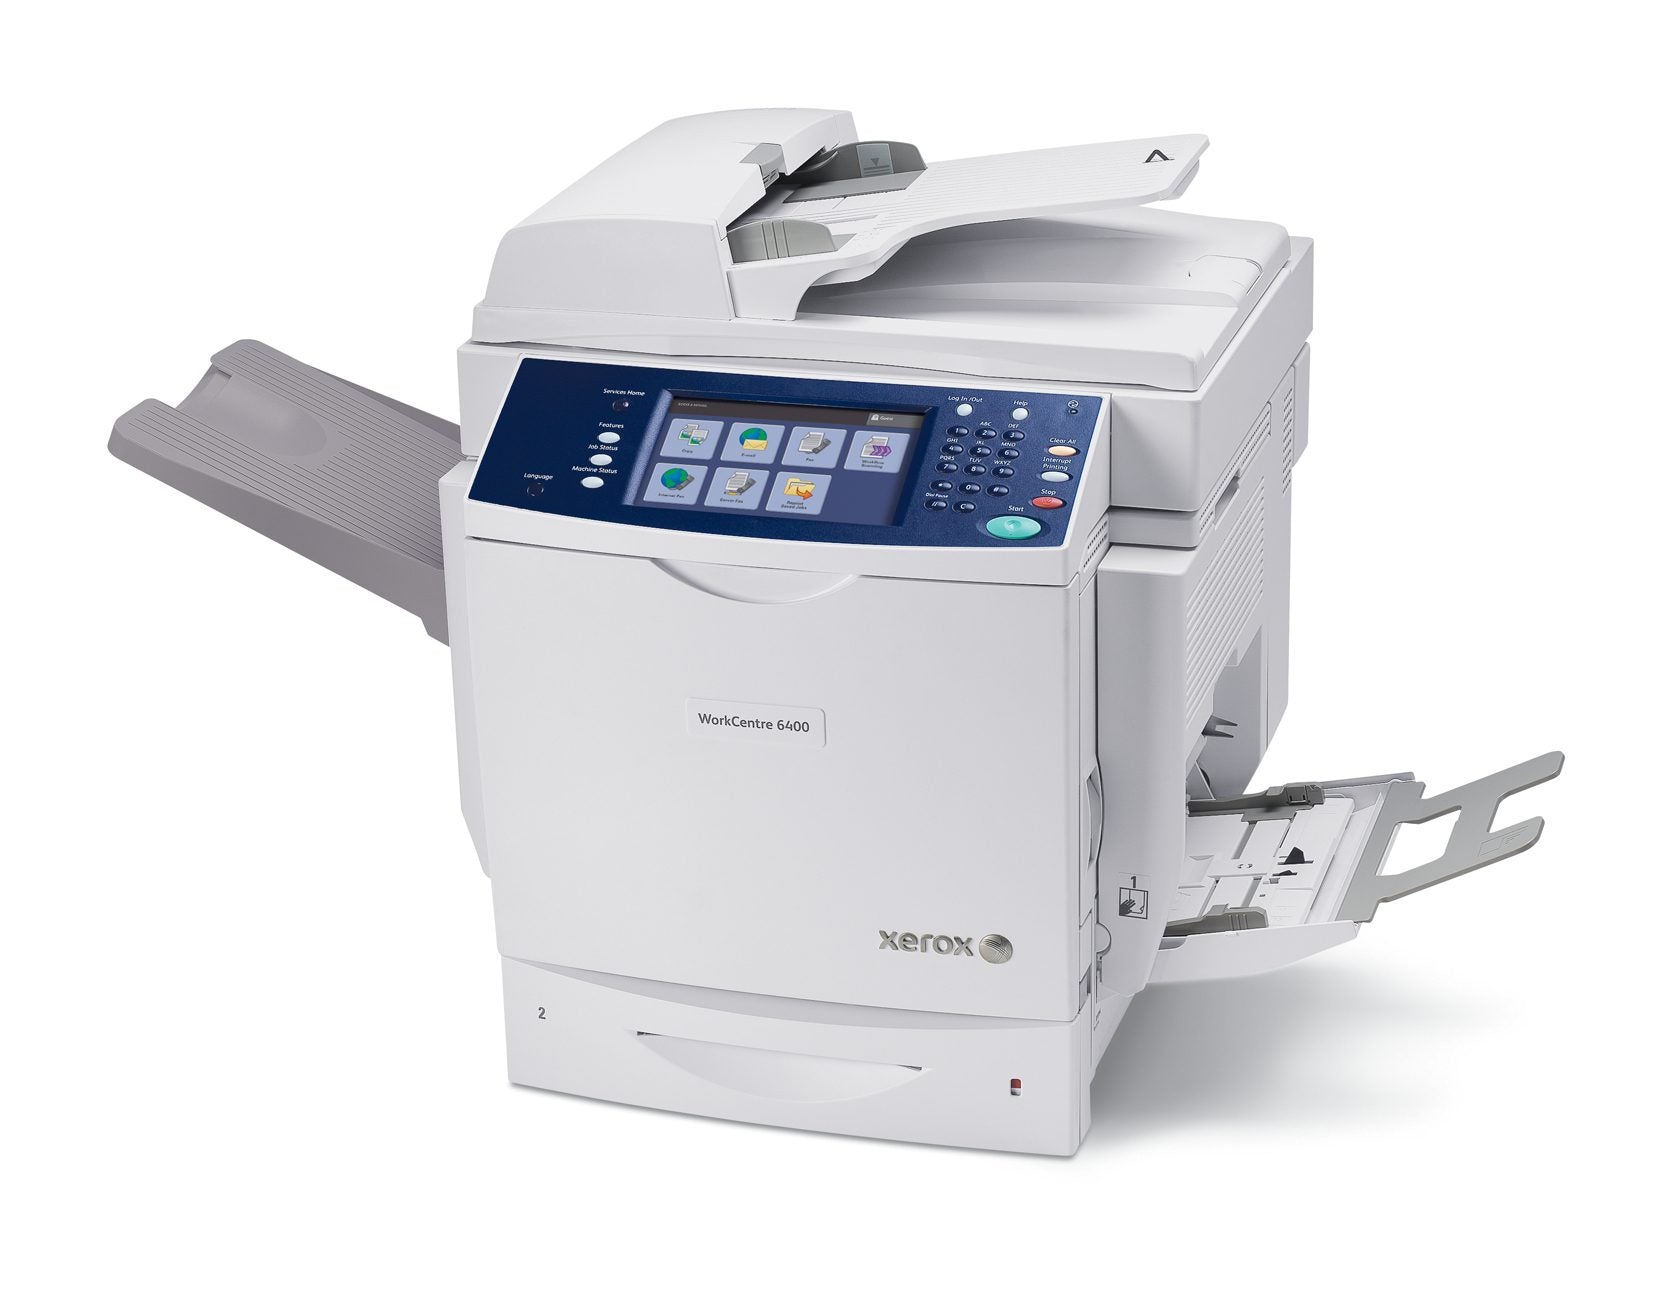 Xerox WorkCentre 6400 Multifunzione Laser a Colori A4 2400x600 DPI 35 ppm Duplex Fronte/Retro RETE